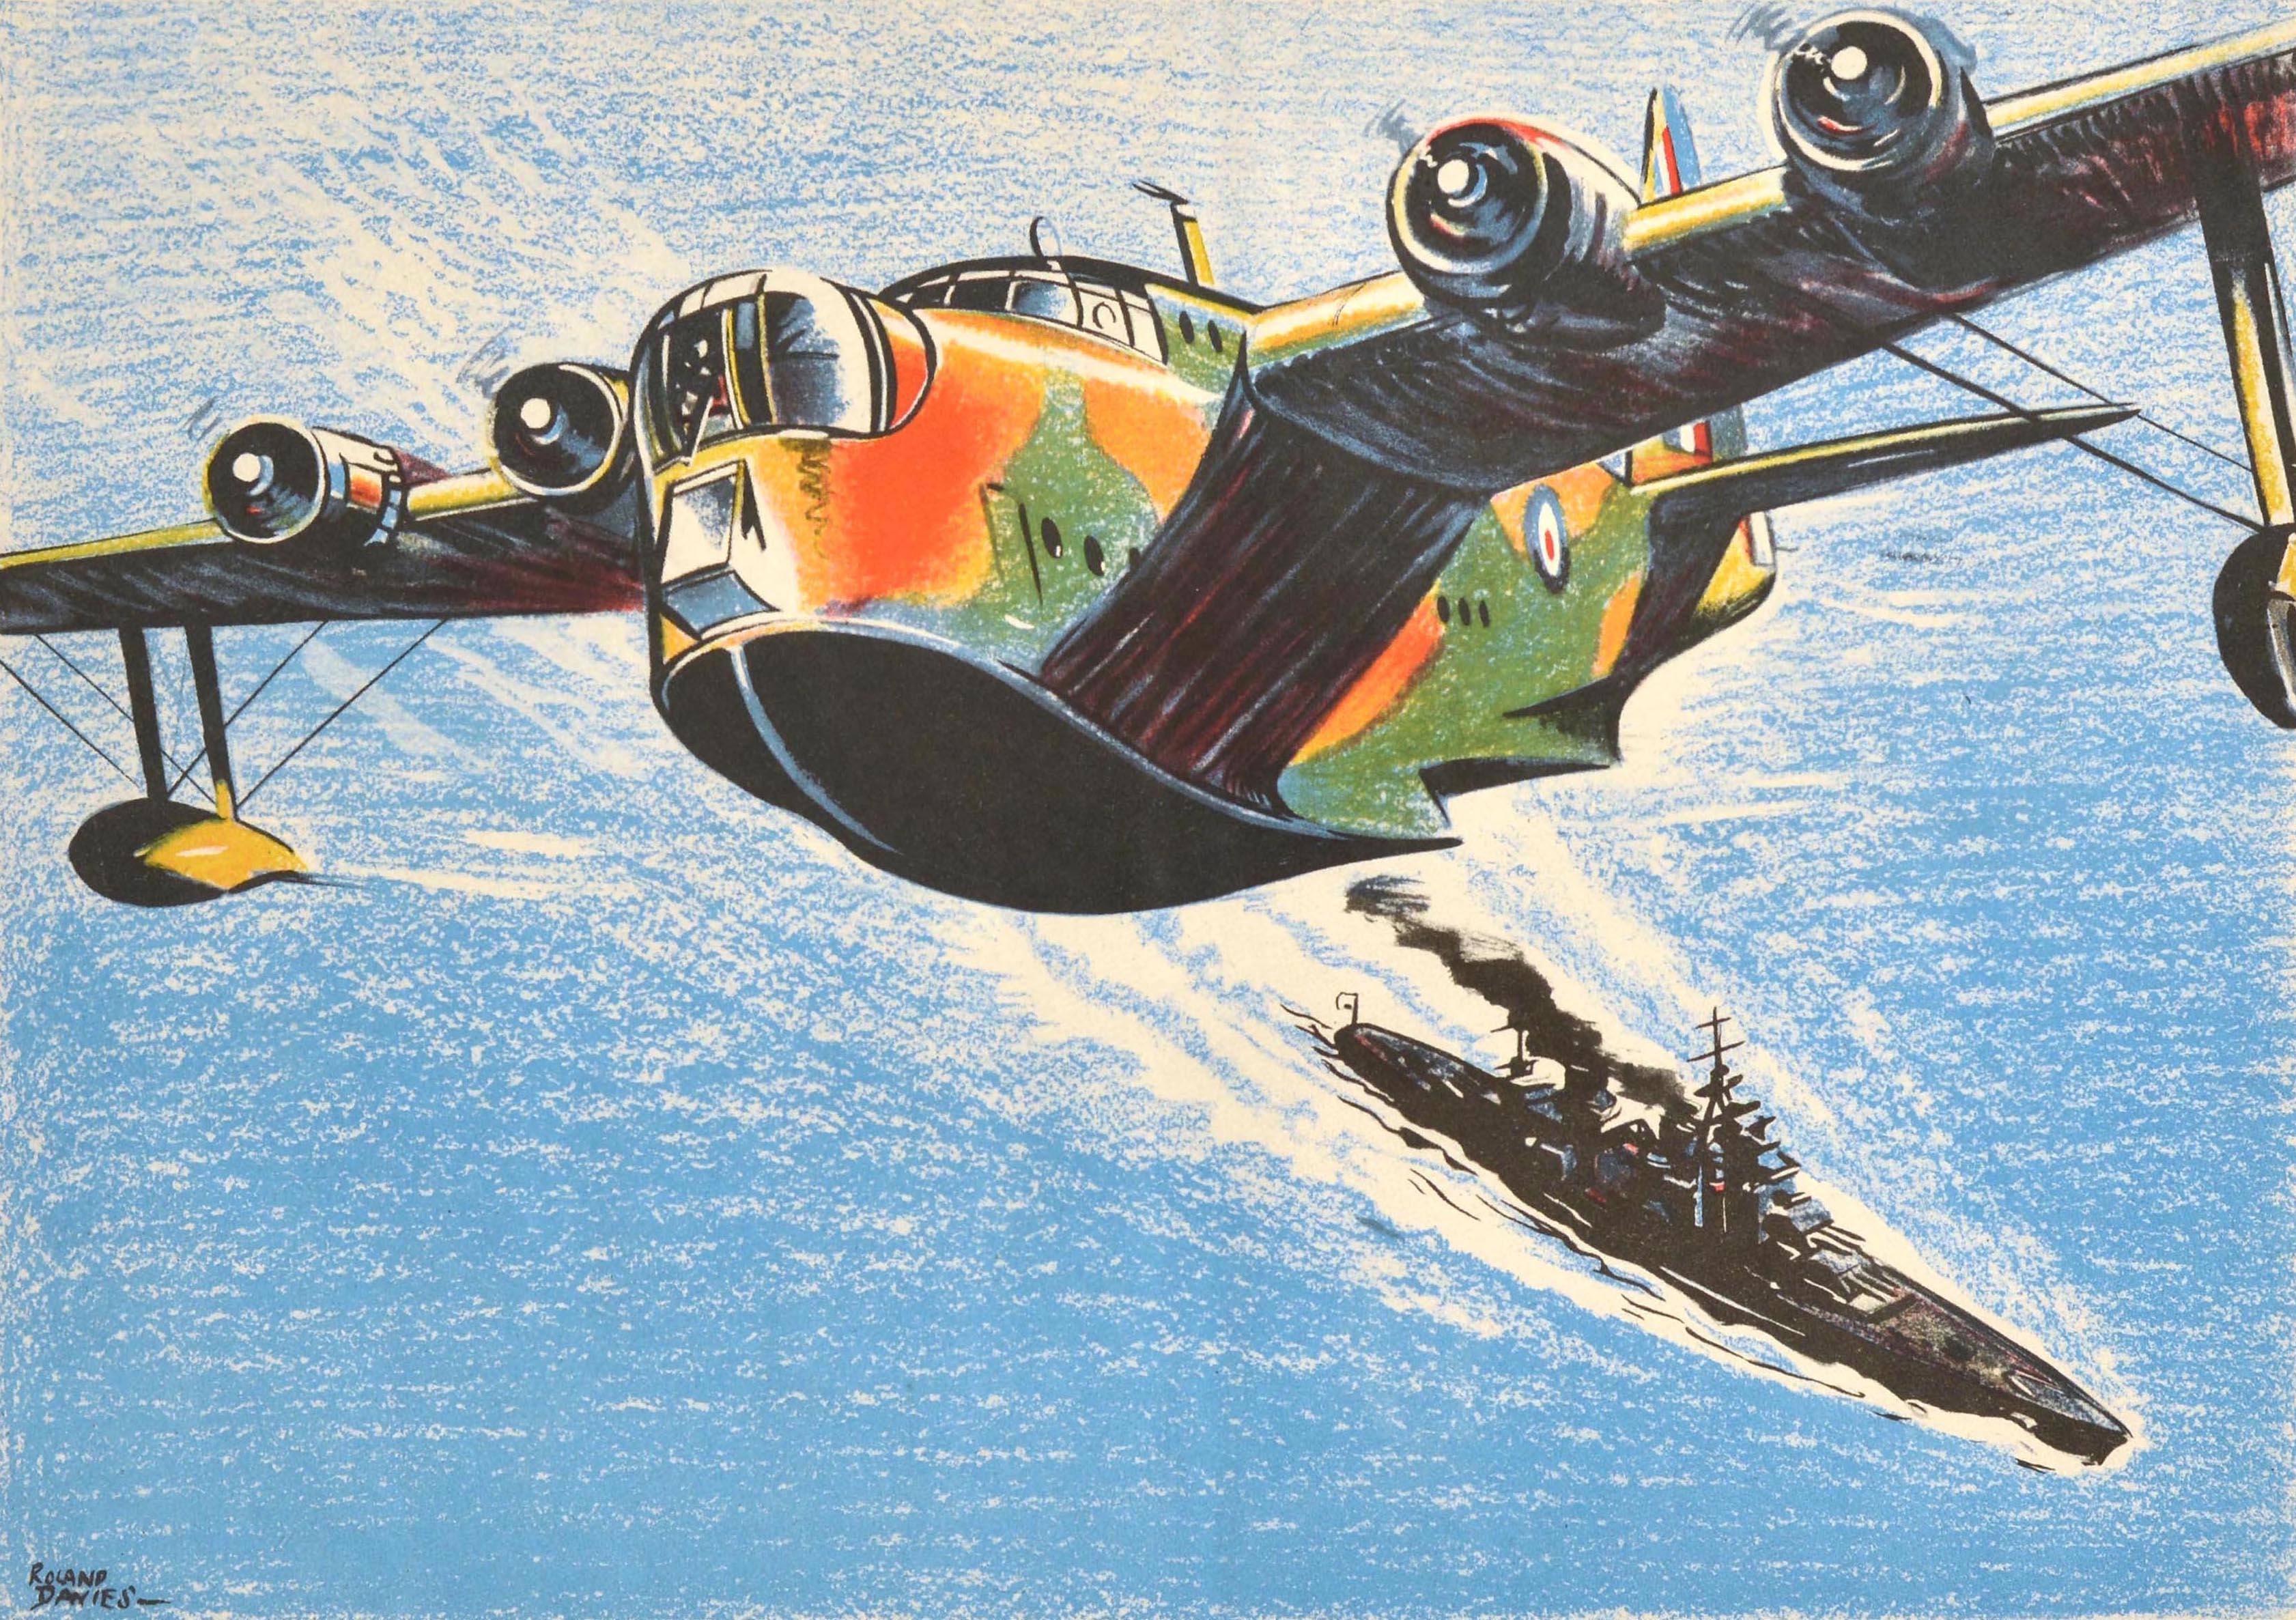 Originalplakat aus dem Zweiten Weltkrieg - Ein britisches Short Sunderland Flying Boat patrouilliert auf den Seewegen - mit einer Illustration eines RAF Royal Air Force Bombenflugzeugs, das über einem Kriegsschiff der britischen Royal Navy auf